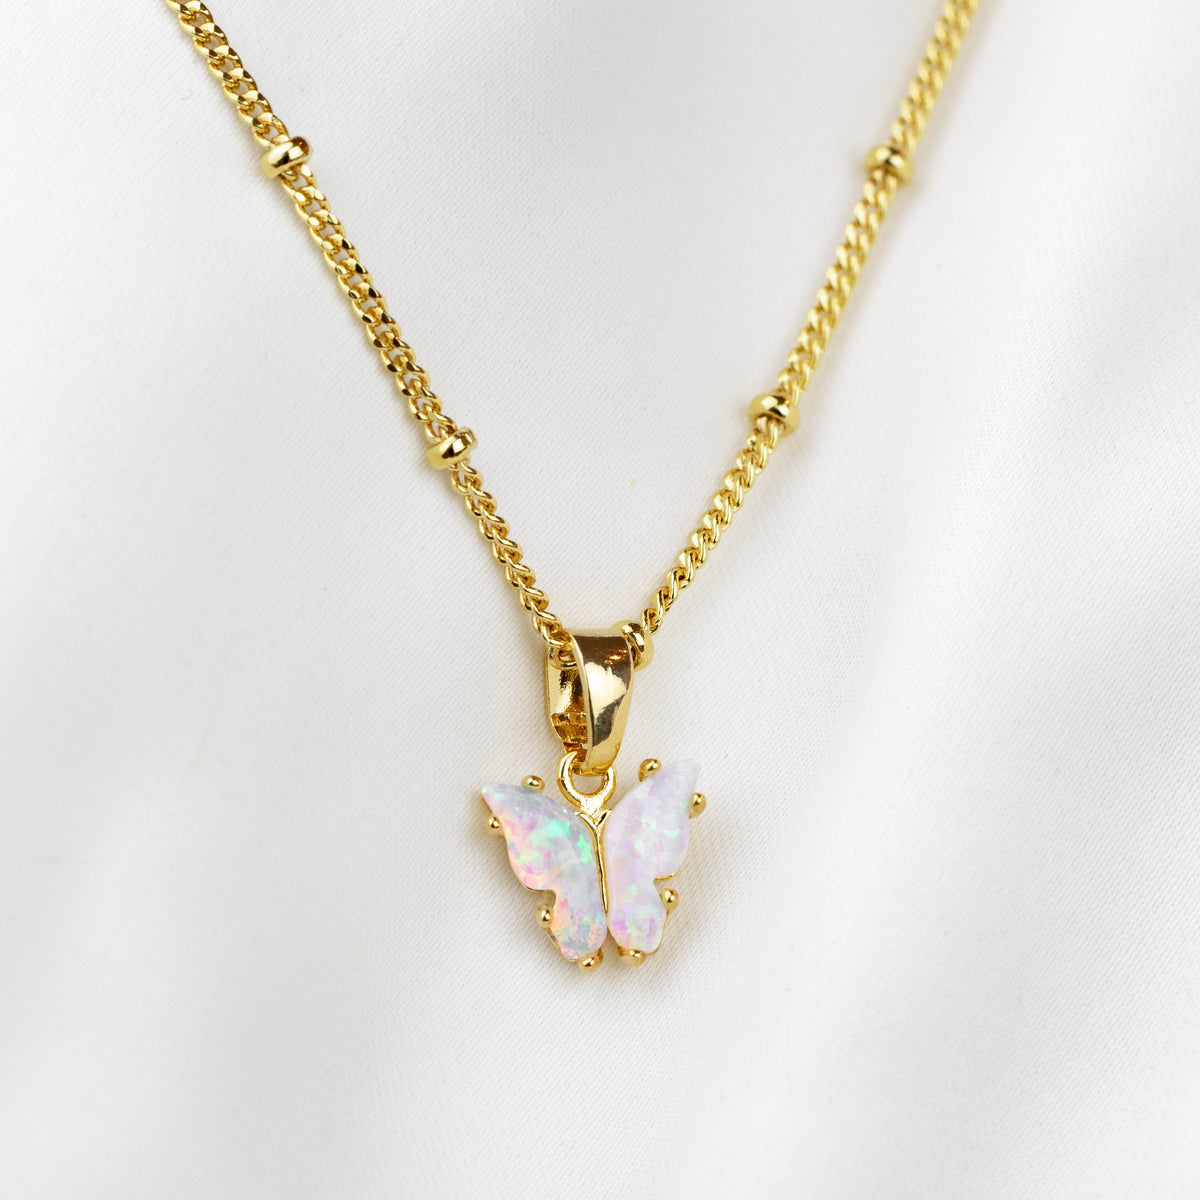 Kylie Harper Sterling Silver Blue Opal Butterfly Necklace 09-004BO-DSP  810103578562 - Jewelry, Pendants - Jomashop